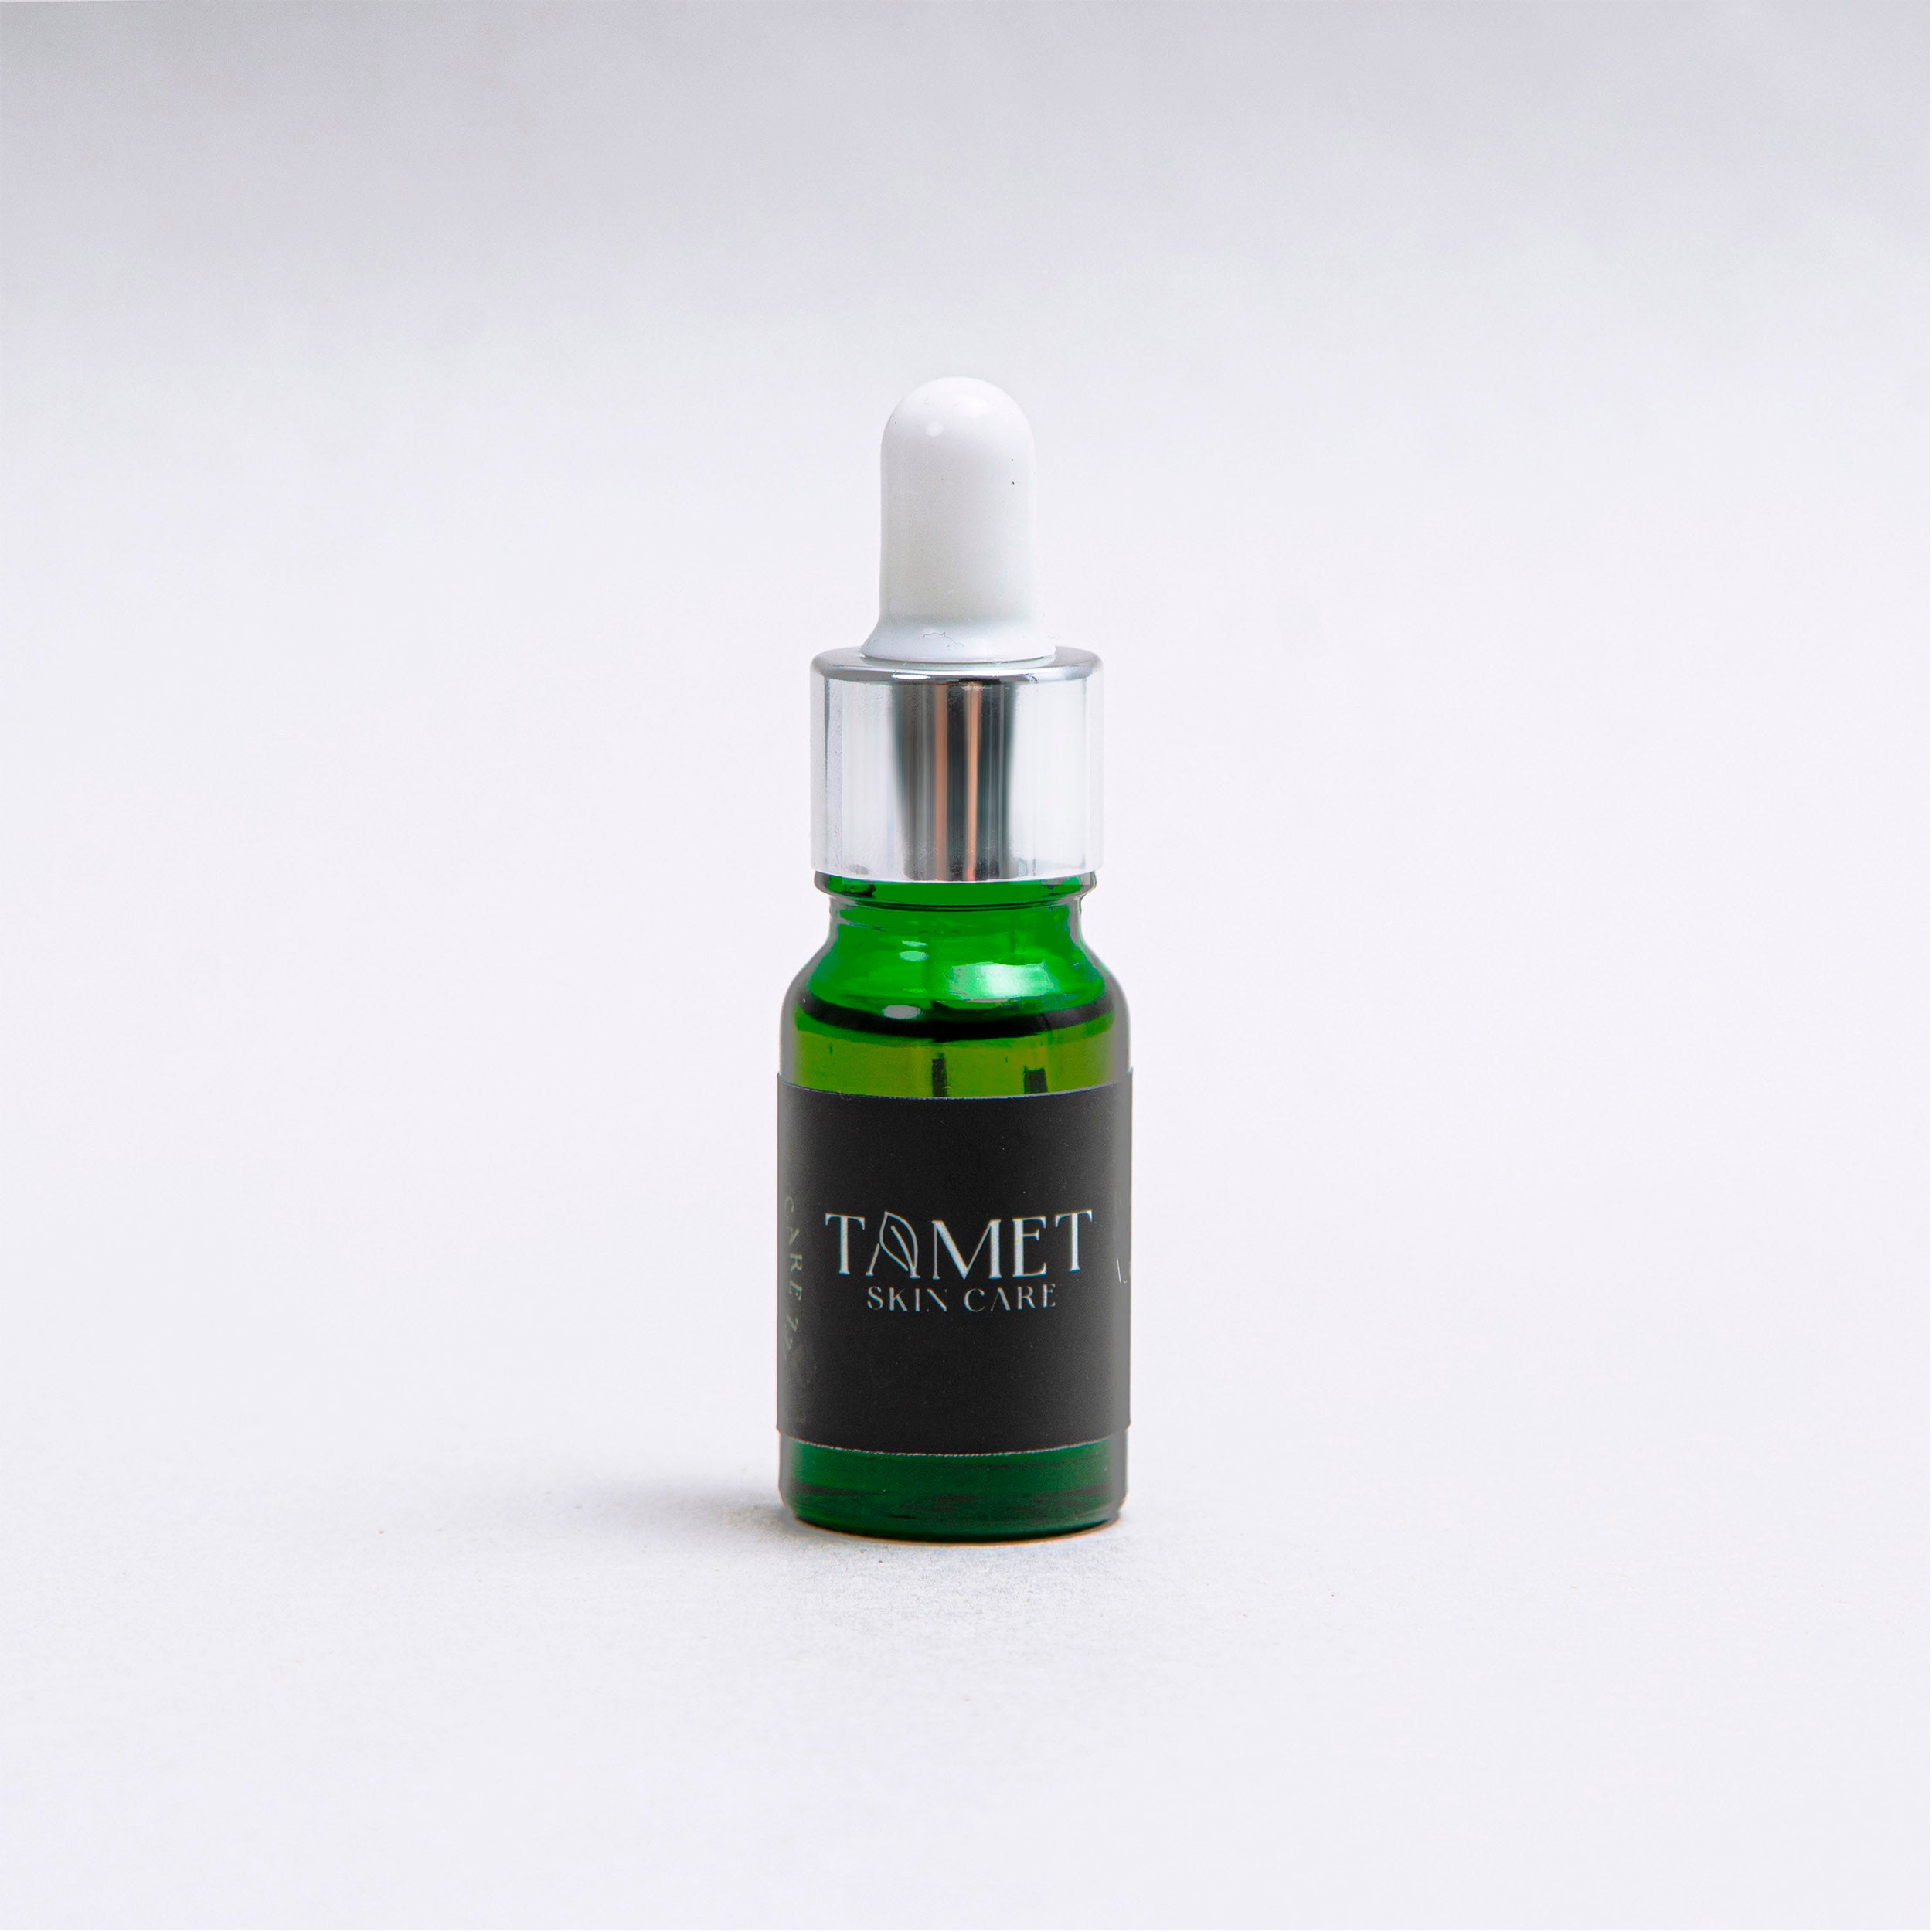 Tamet- Aceite desmaquillante de ojos